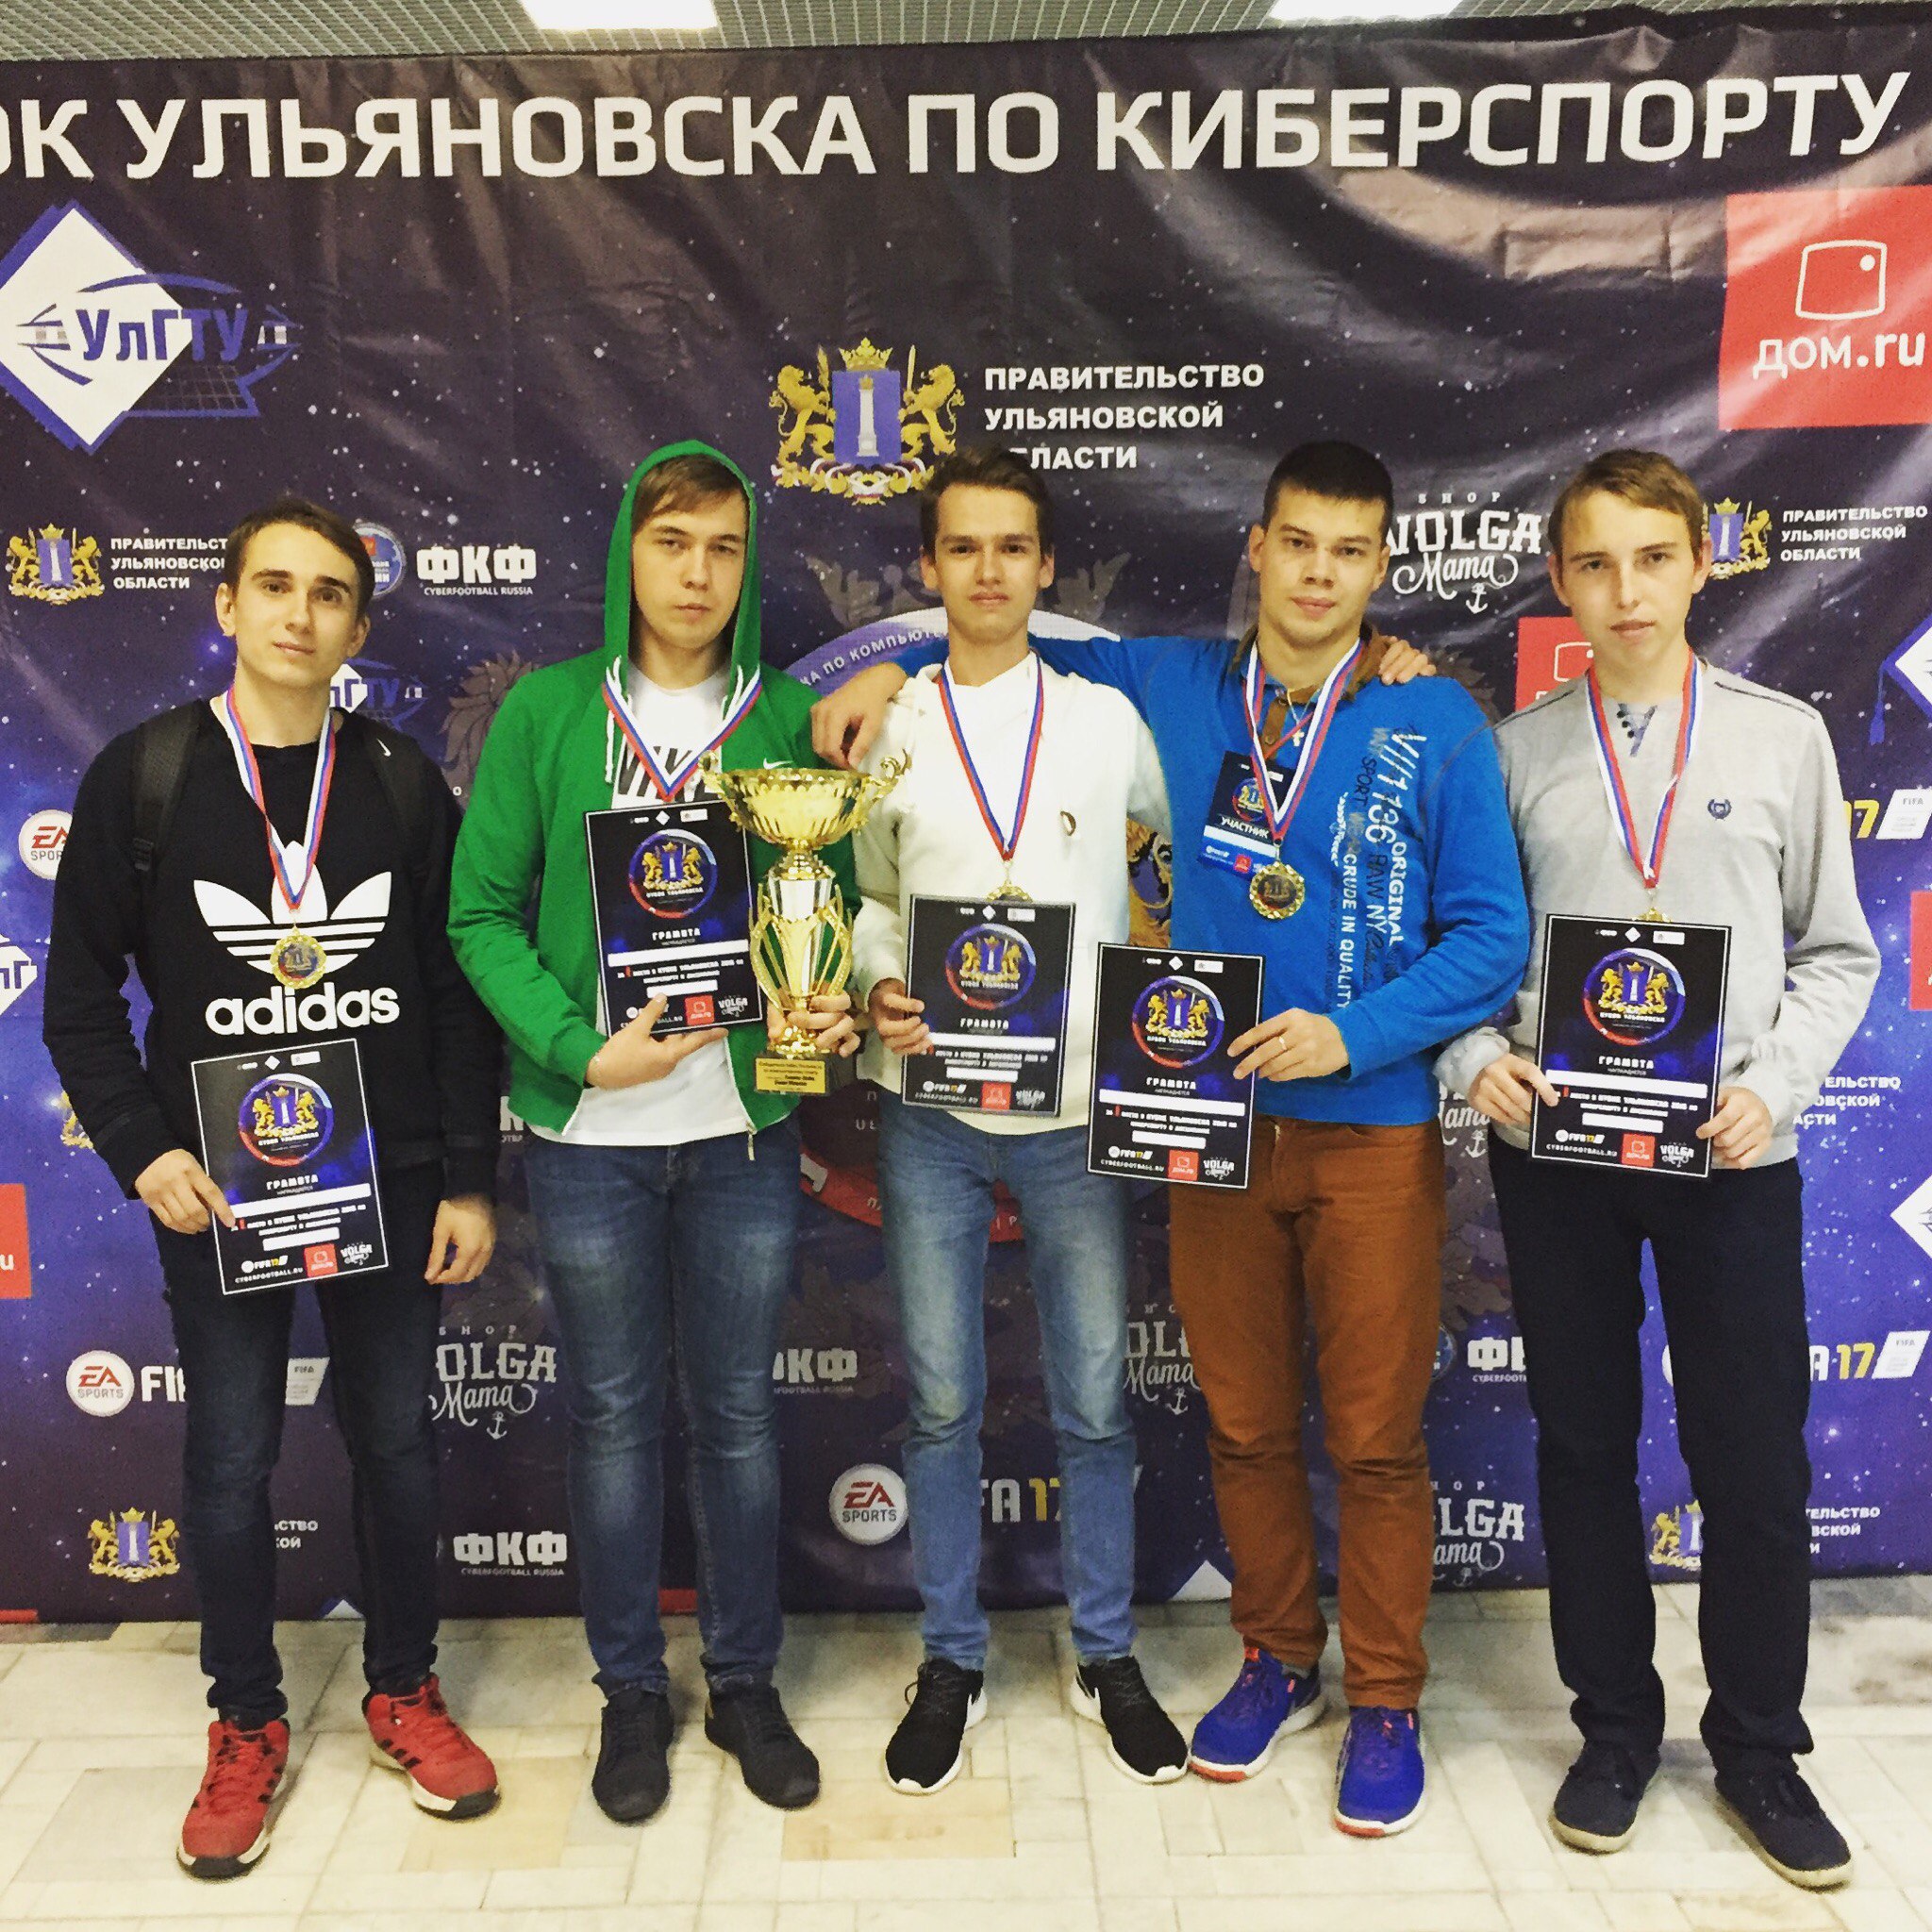 Пензенская команда заняла первое место во Всероссийском чемпионате по киберспорту